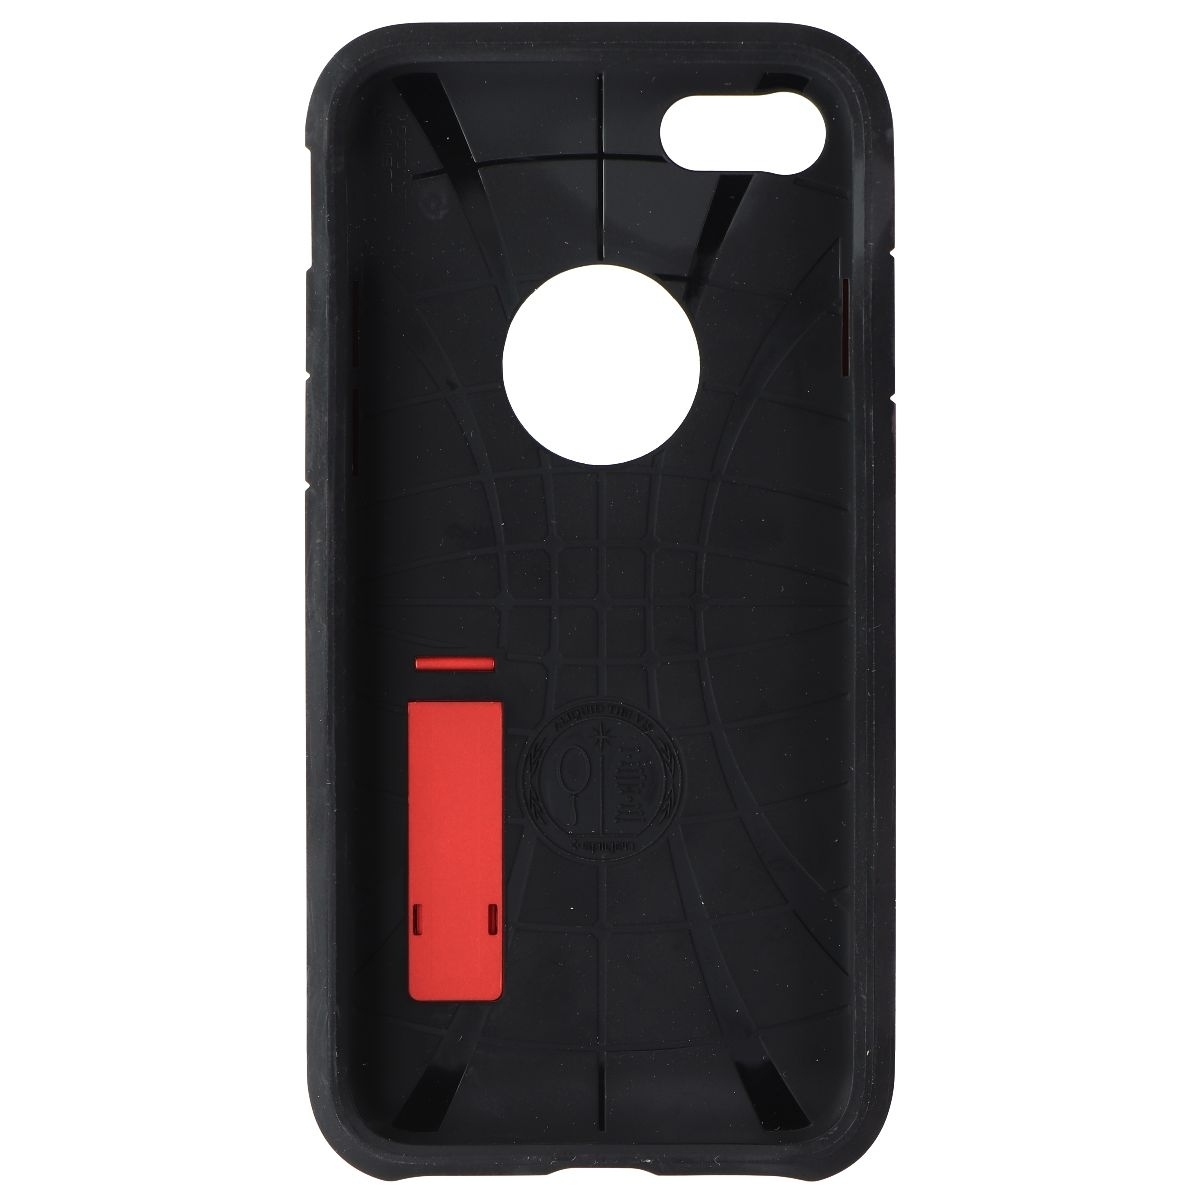 Spigen Tough Armor 2 Series Case For Apple IPhone 8/7 - Red/Black (Refurbished)